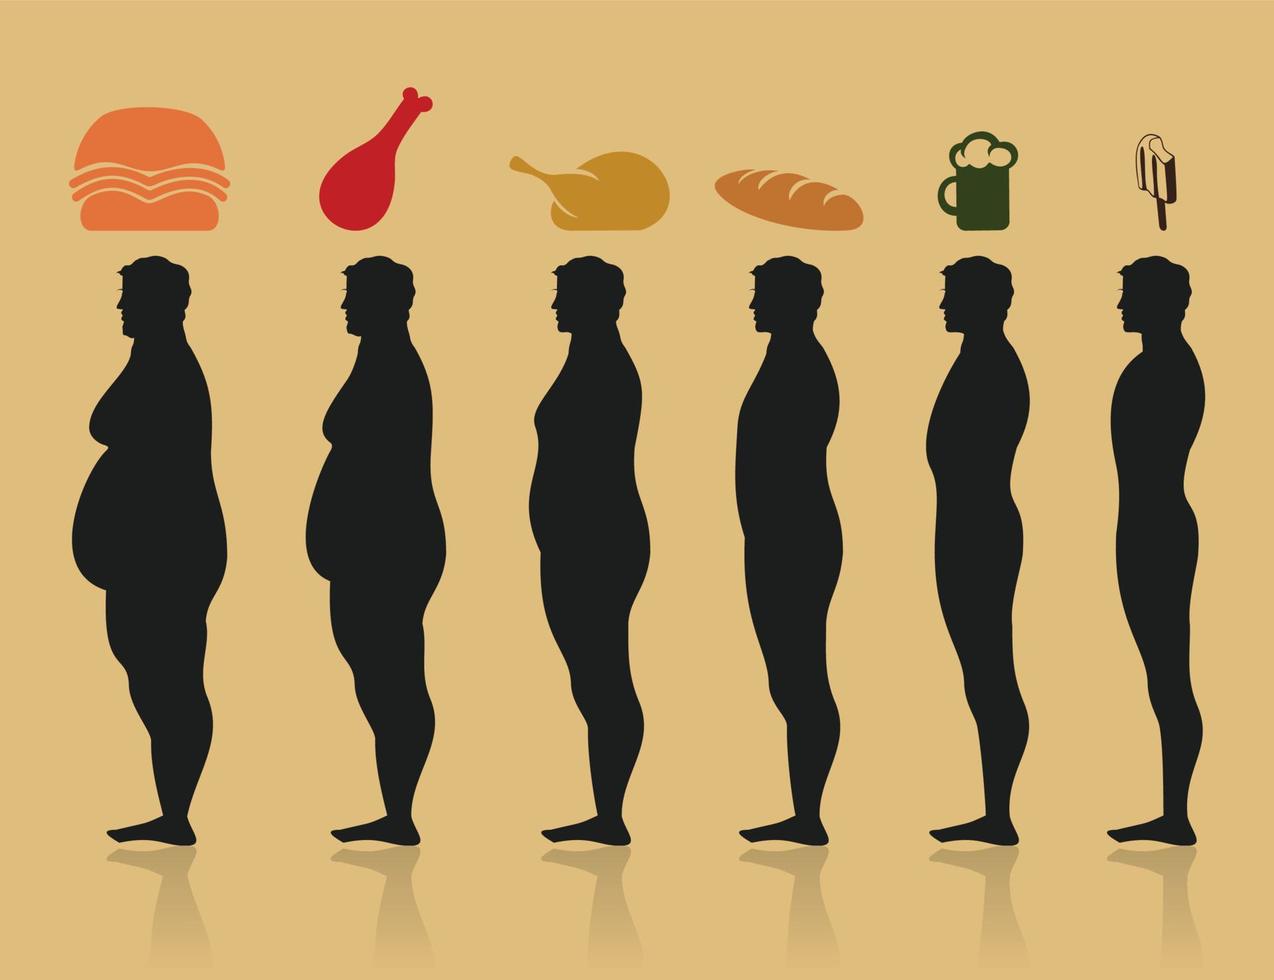 perjudicial productos de comida redondo el grasa hombre. un vector ilustración